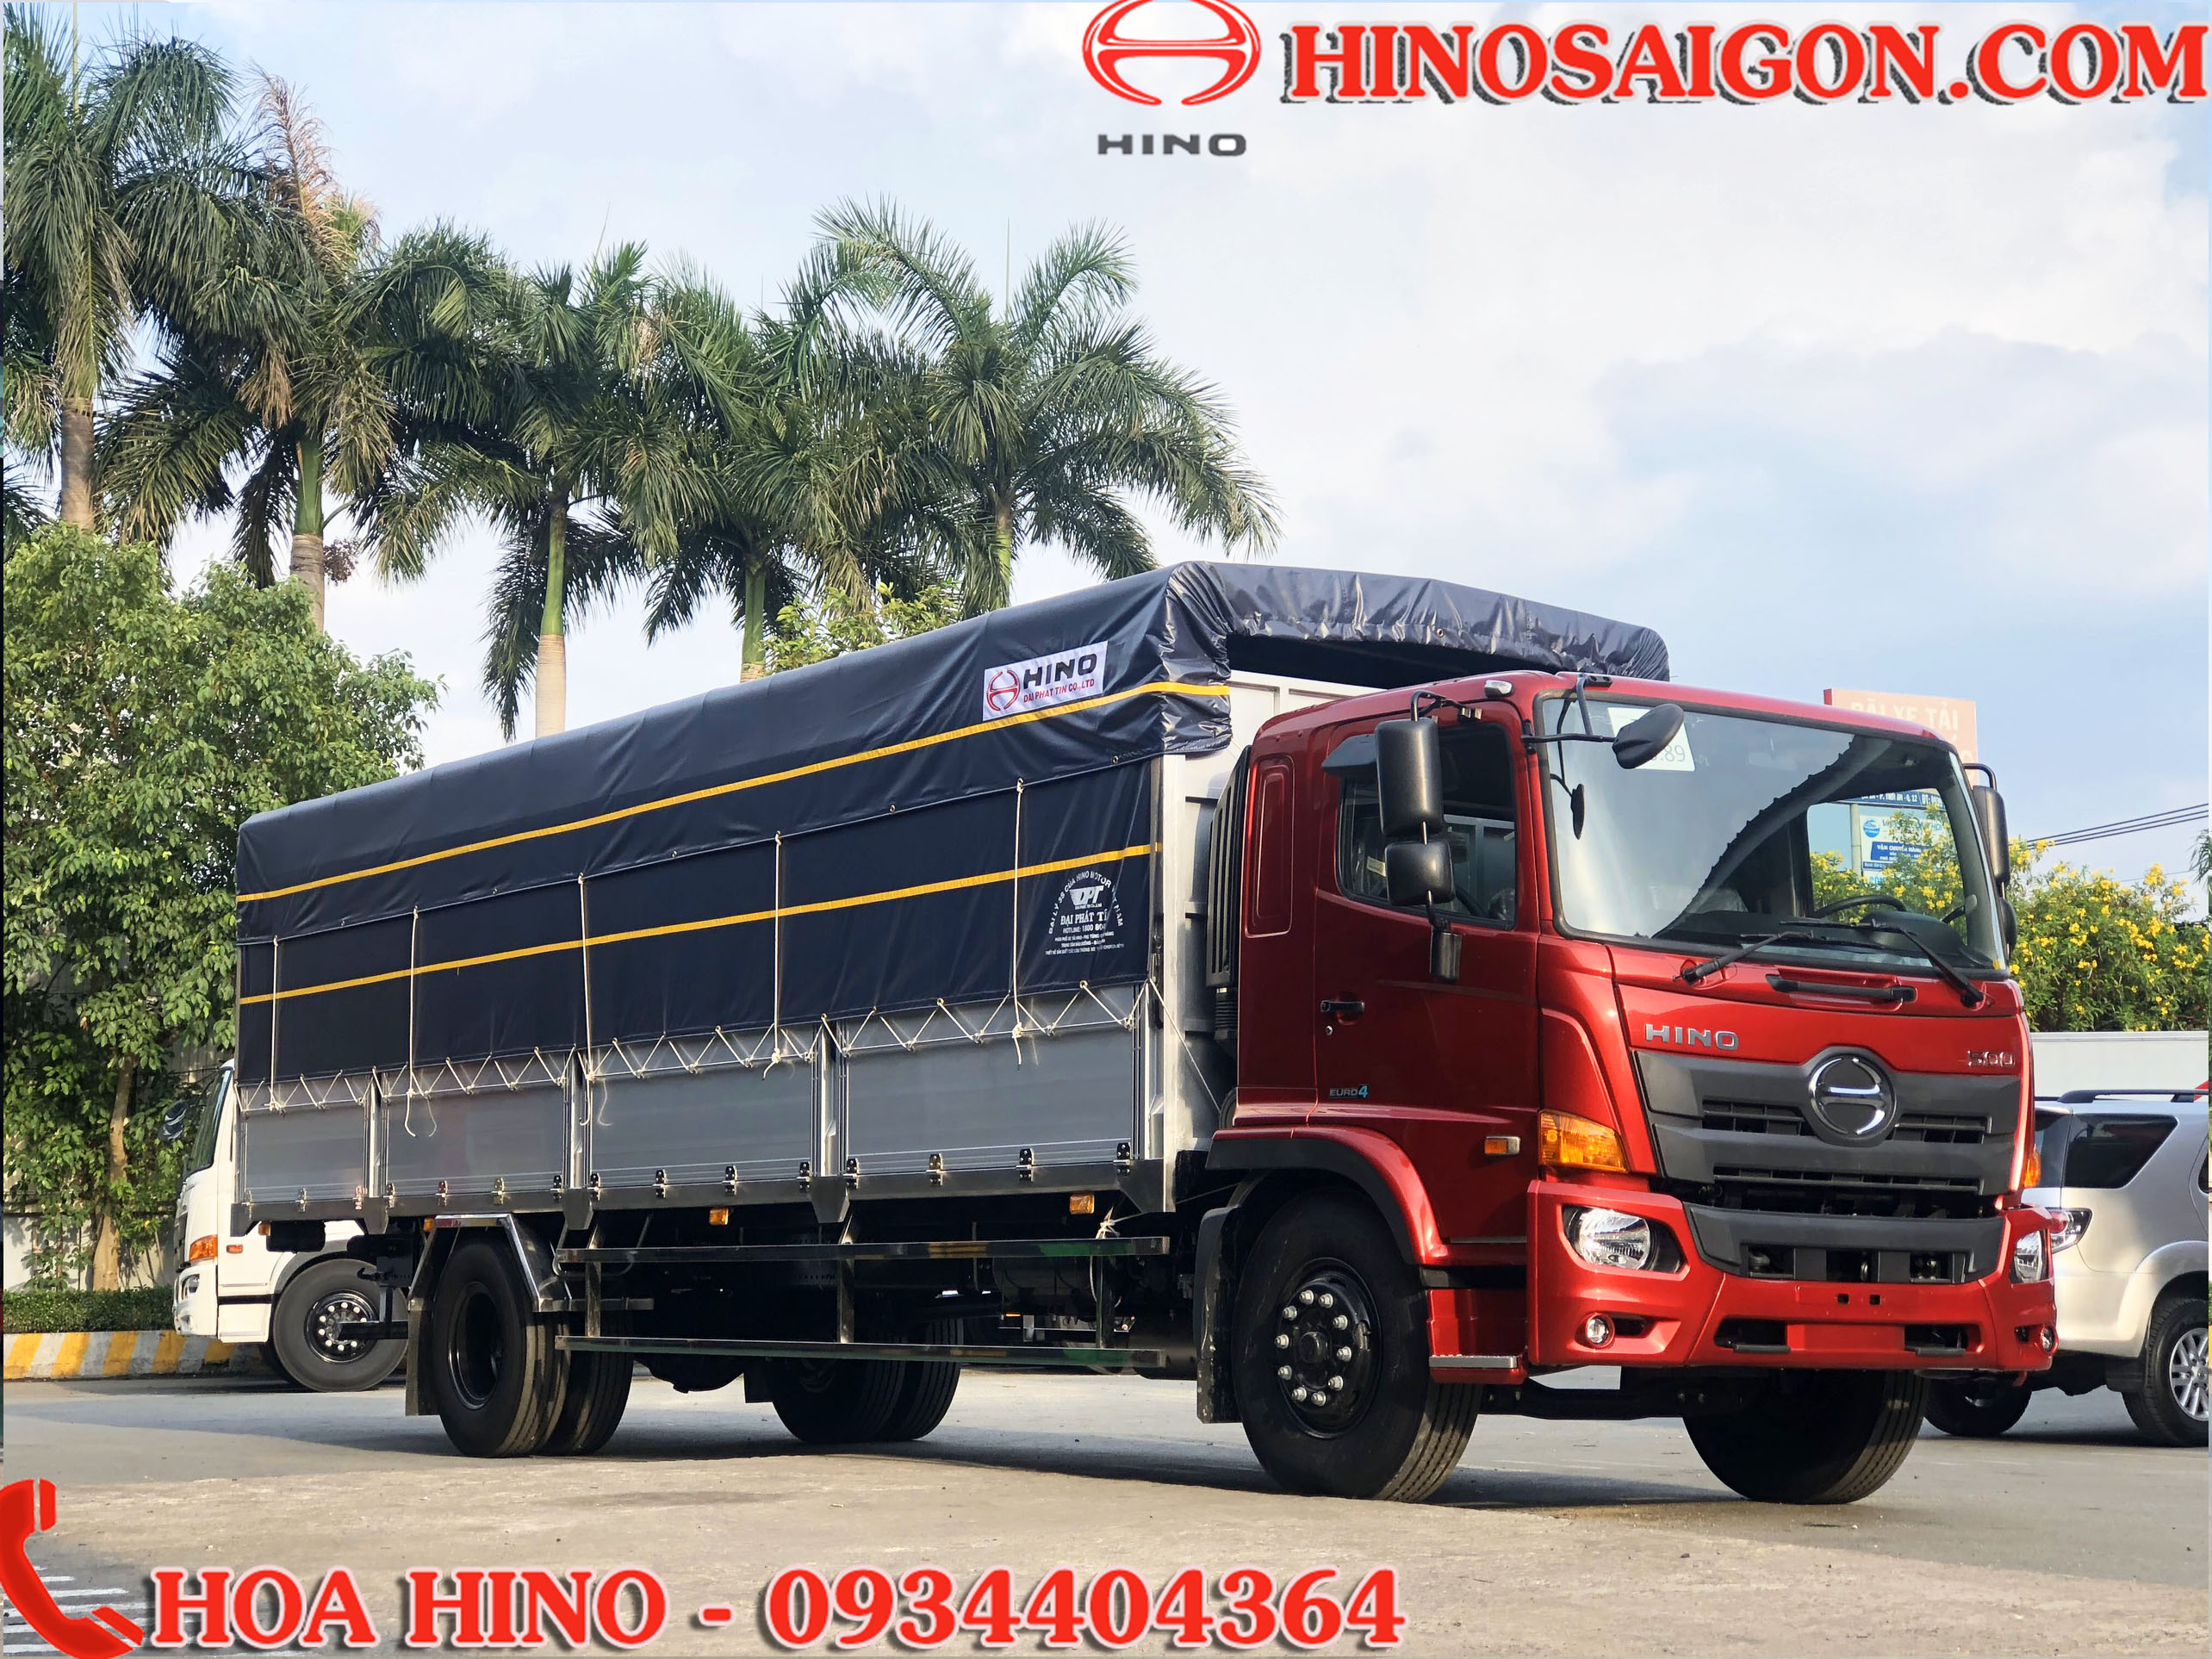 Xe tải Hino 8 tấn: Với khả năng chuyên chở lớn và độ bền vượt trội, xe tải Hino 8 tấn là một trong những sự lựa chọn hàng đầu của các doanh nghiệp. Với khối động cơ đắc lực, Hino 8 tấn đảm bảo hiệu quả và hoạt động mạnh mẽ. Hãy cùng chiêm ngưỡng xe tải Hino 8 tấn trong hình ảnh.